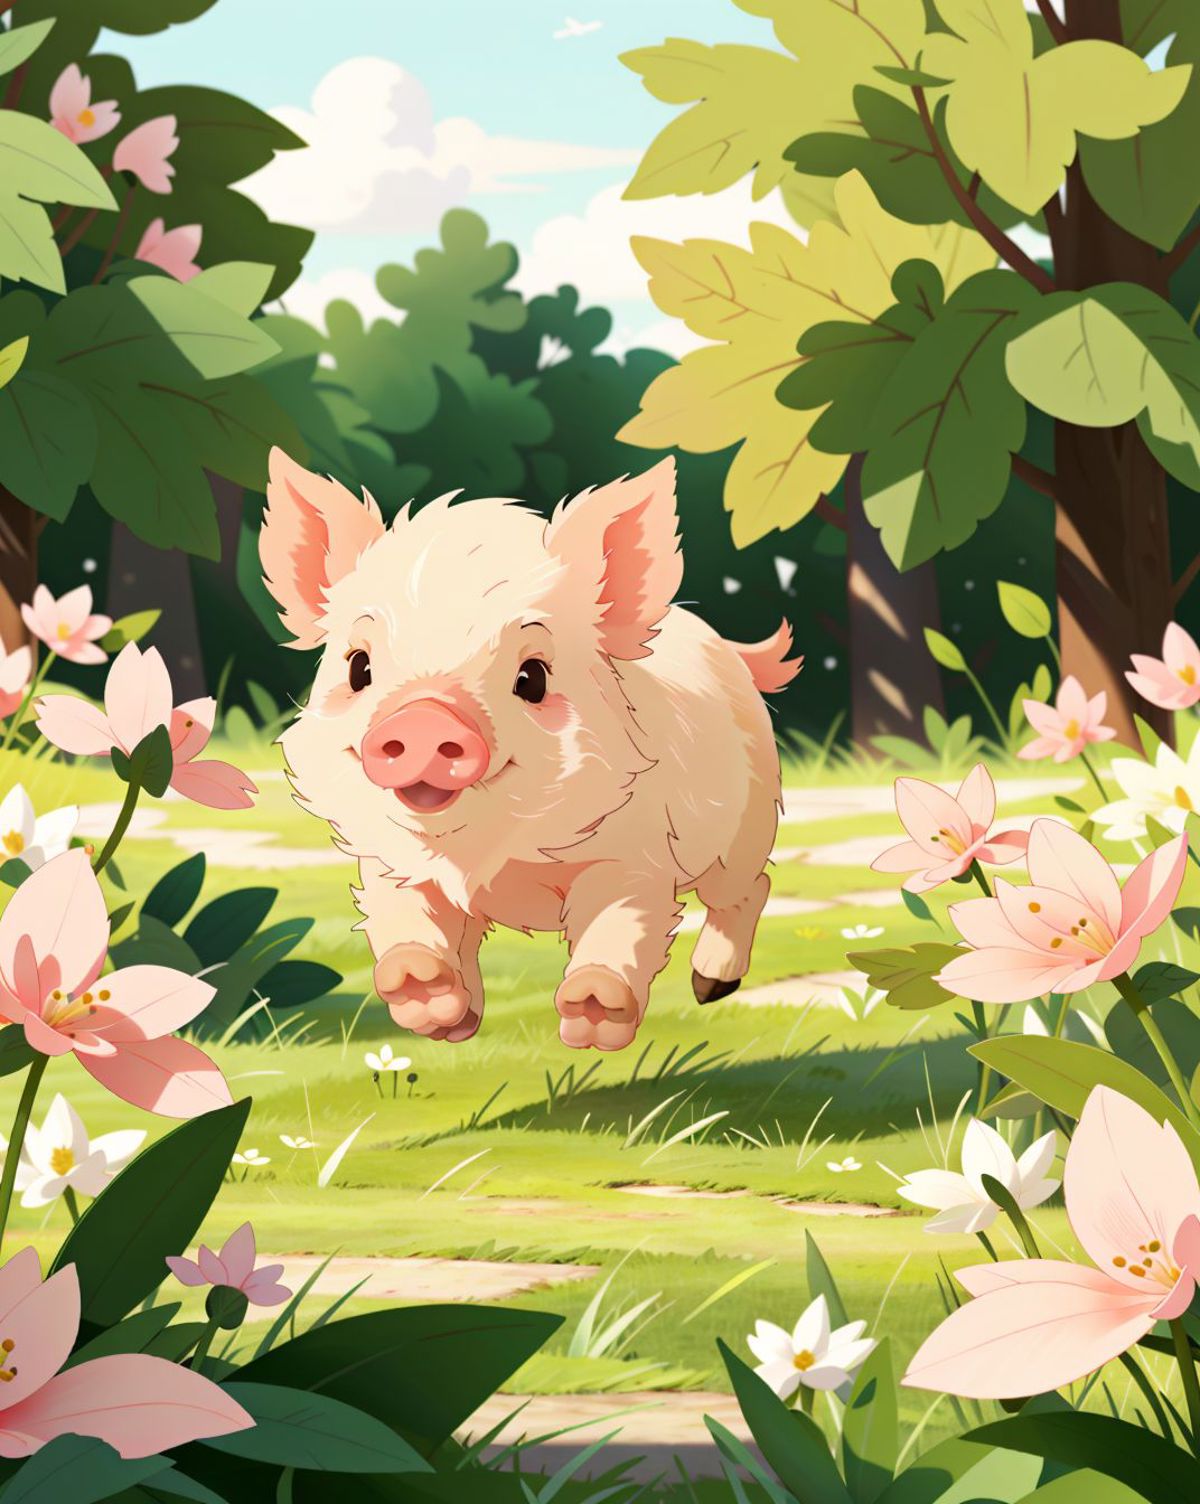 Cartoon Pig Running Through Flower-Filled Field